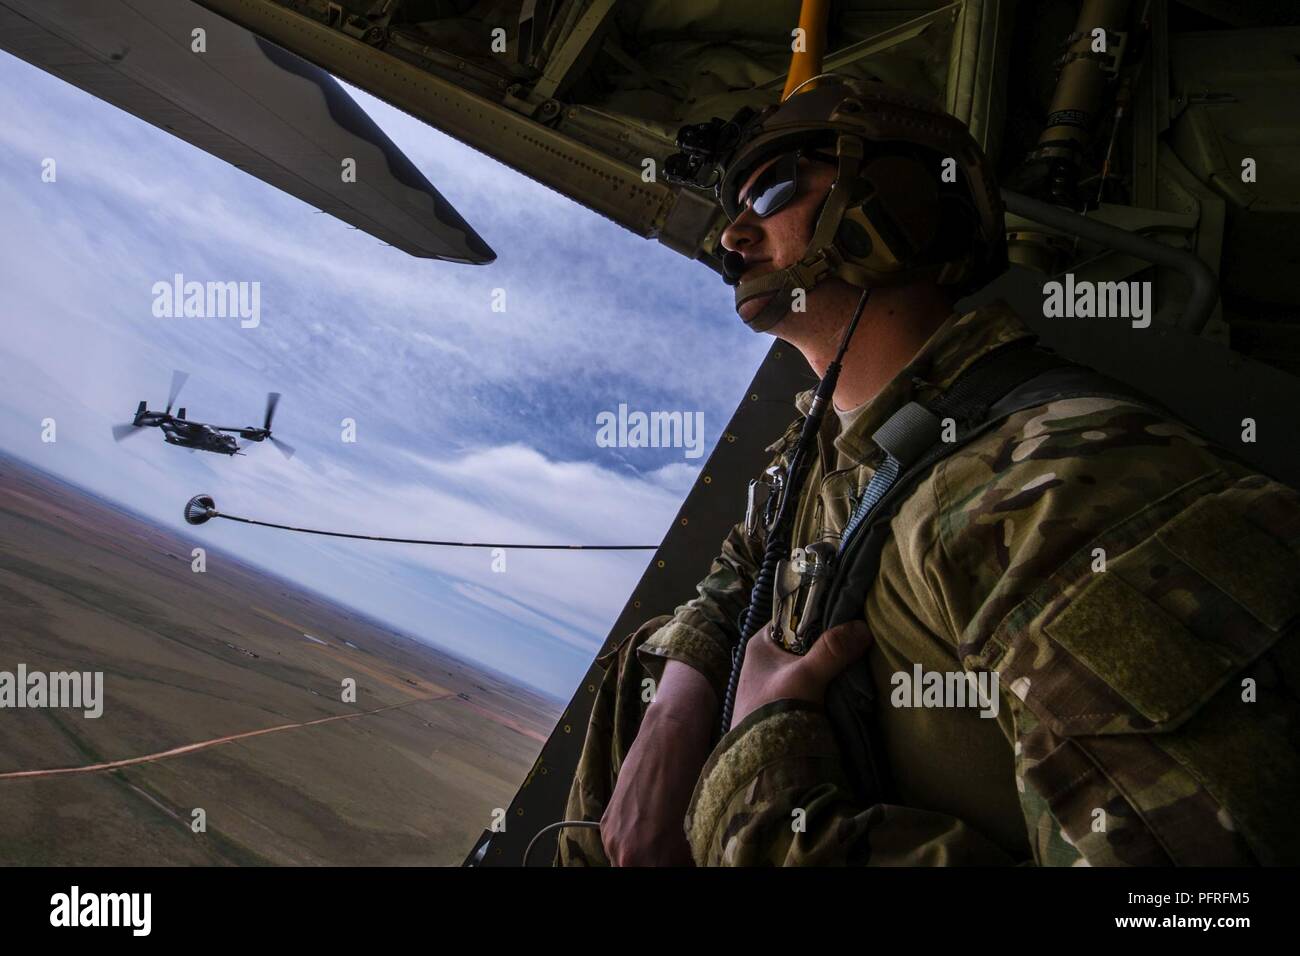 Misclevitz Senior Airman Christopher, 9e Escadron d'opérations spéciales du ministre des Postes, donne sur l'arrière d'un MC-130J Commando II alors qu'un CV-22 Osprey avion vole derrière à Cannon Air Force Base, N.M., 26 mai 2018. Le C-130 et CV-22 ont participé à l'air show en démontrant leurs capacités complet dans un scénario de sauvetage de l'exercice. Banque D'Images